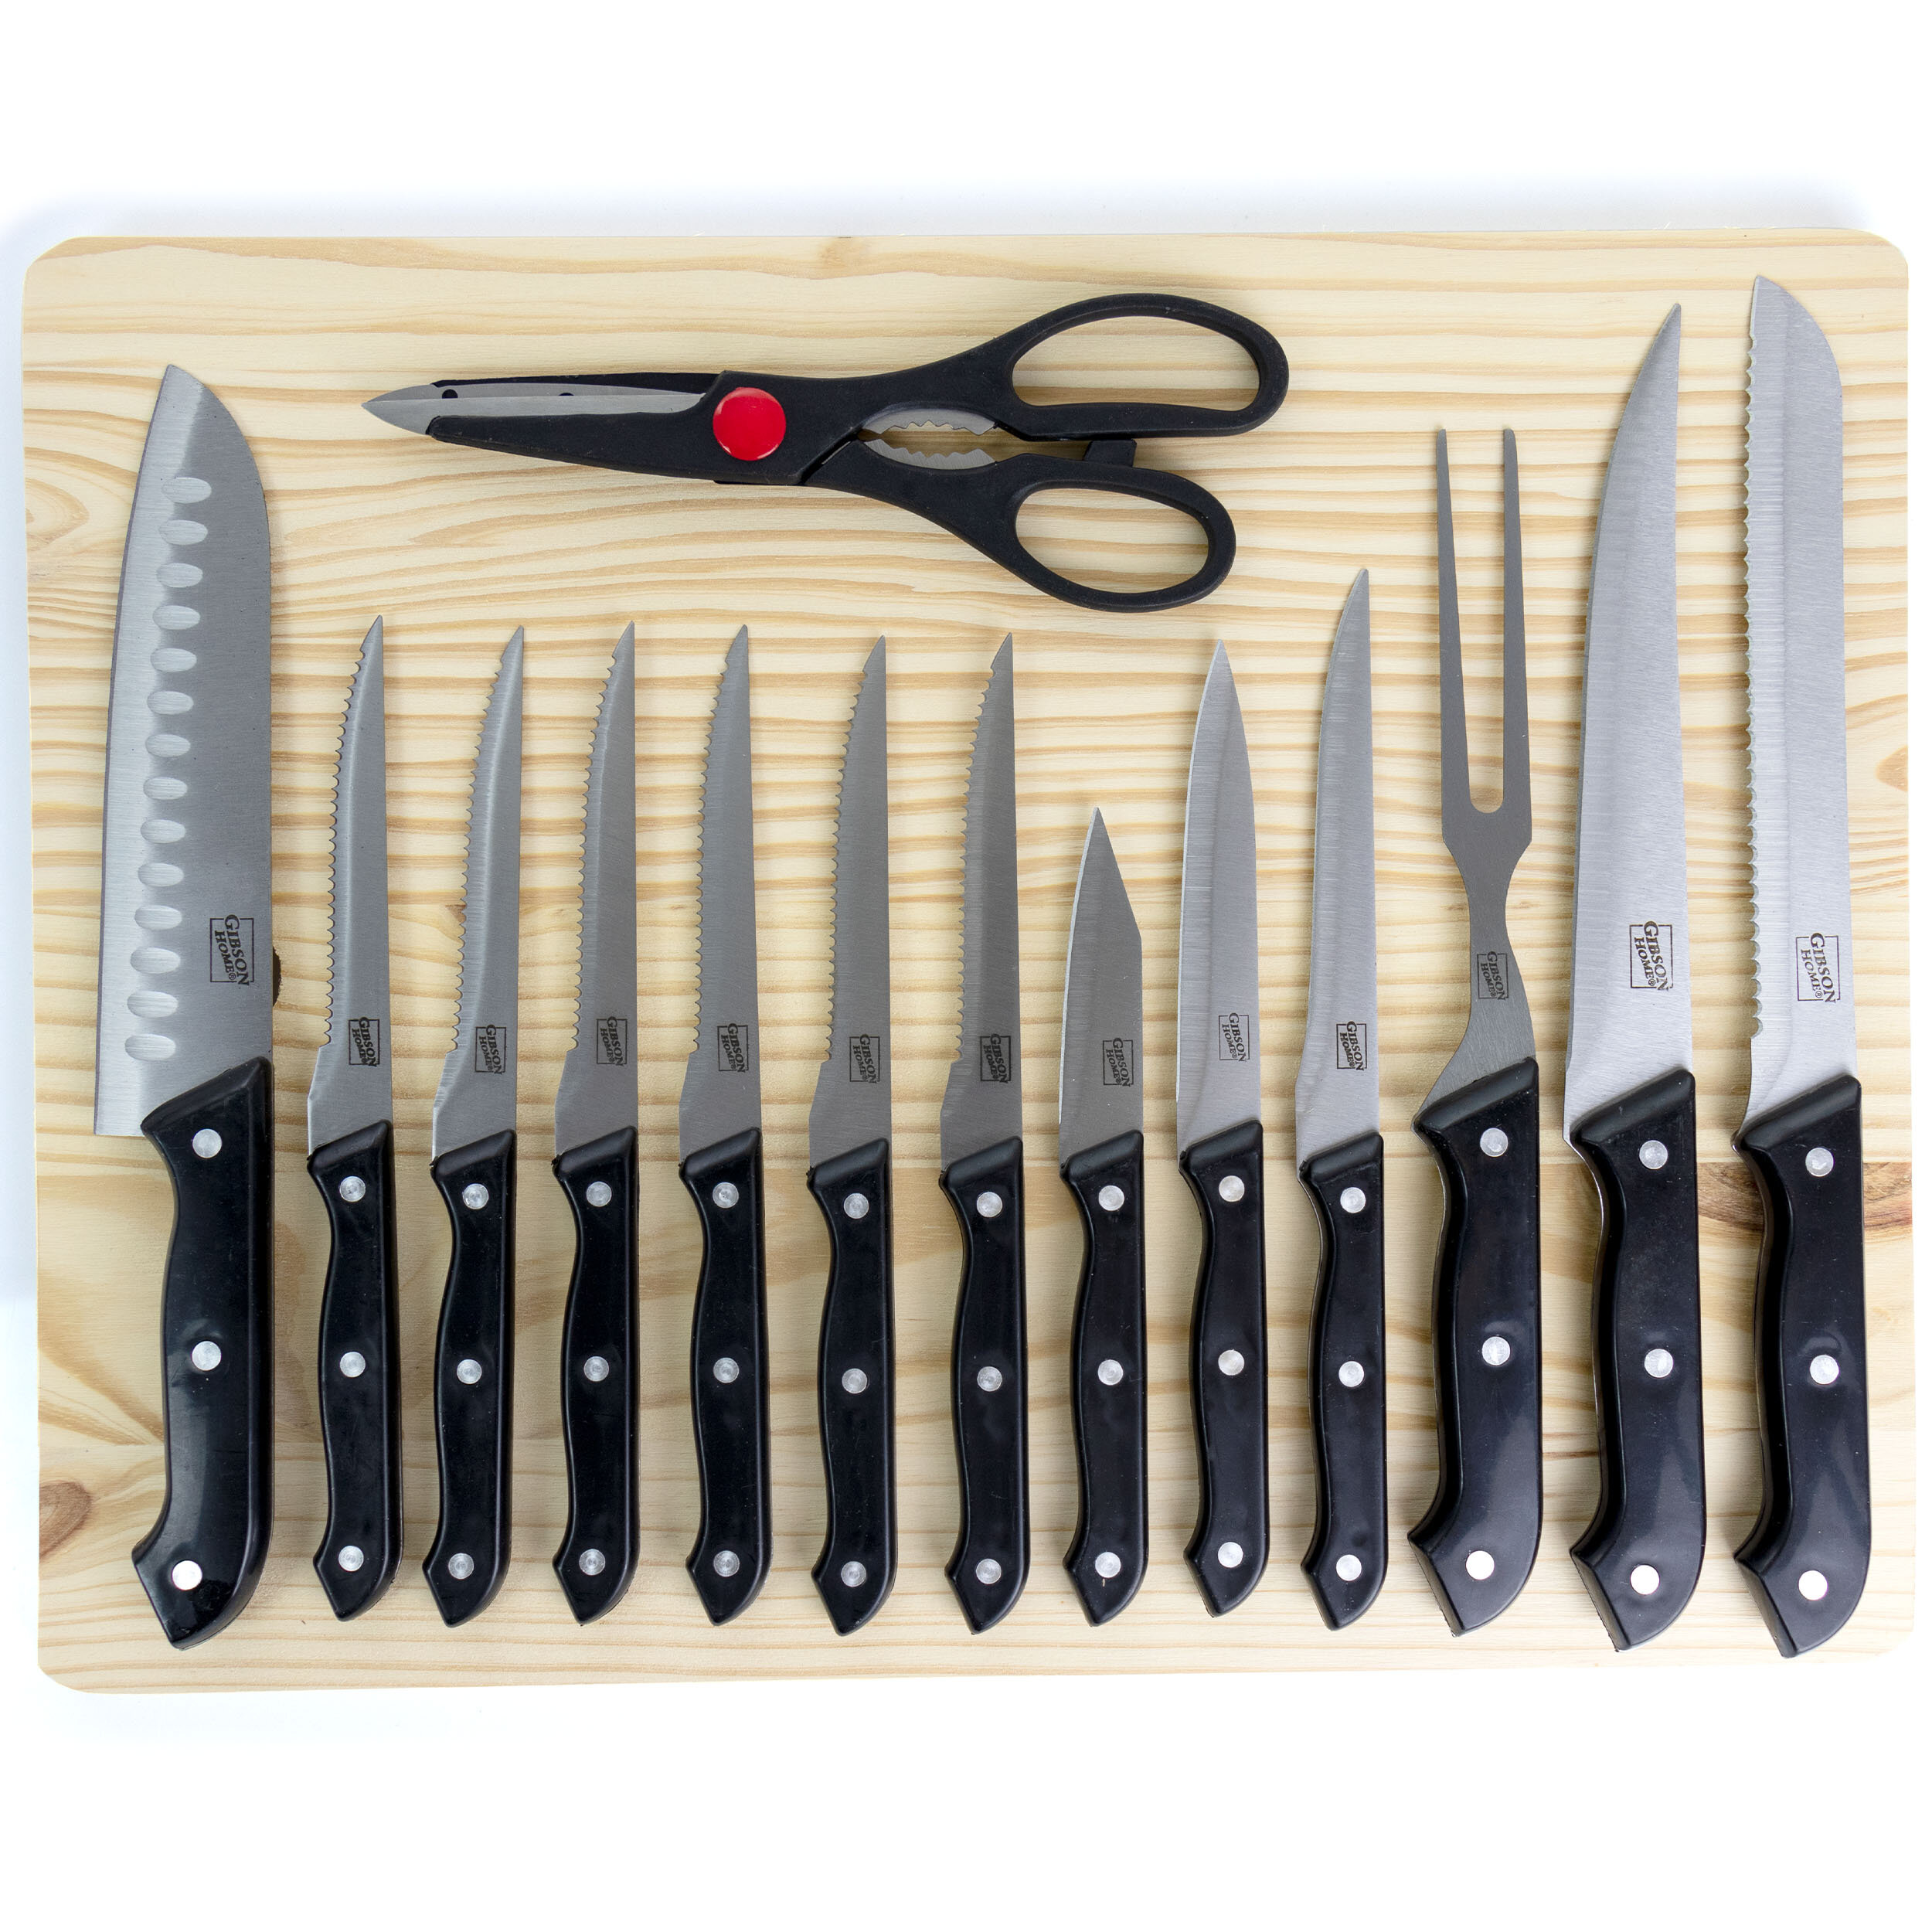 https://assets.wfcdn.com/im/10089400/compr-r85/1240/124001589/gibson-home-wildcraft-15-piece-assorted-knife-set.jpg